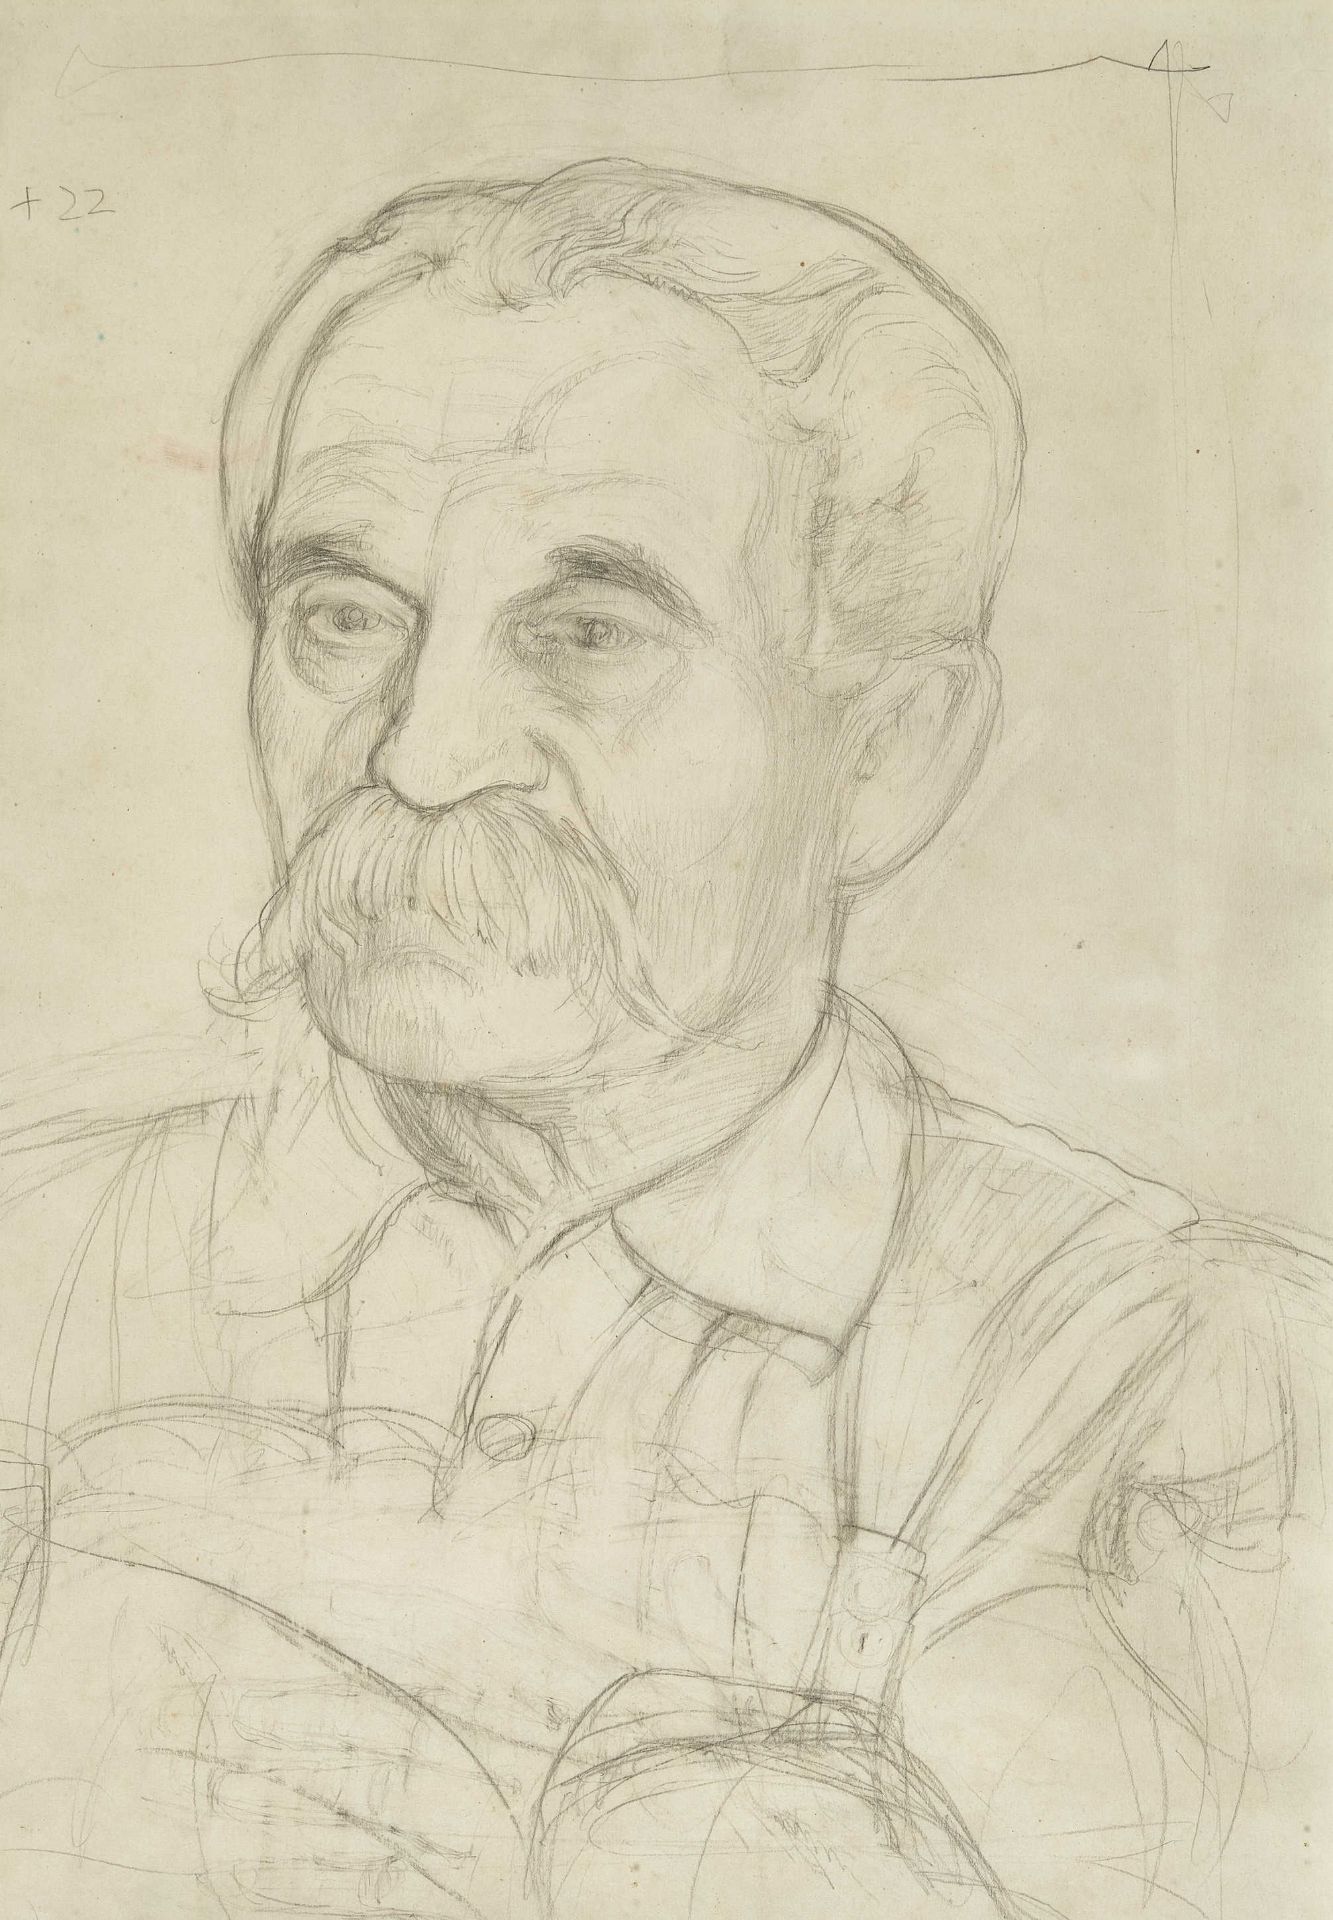 BIÉLER, ERNEST: Porträt des Chirurgen César Roux (1857-1934).